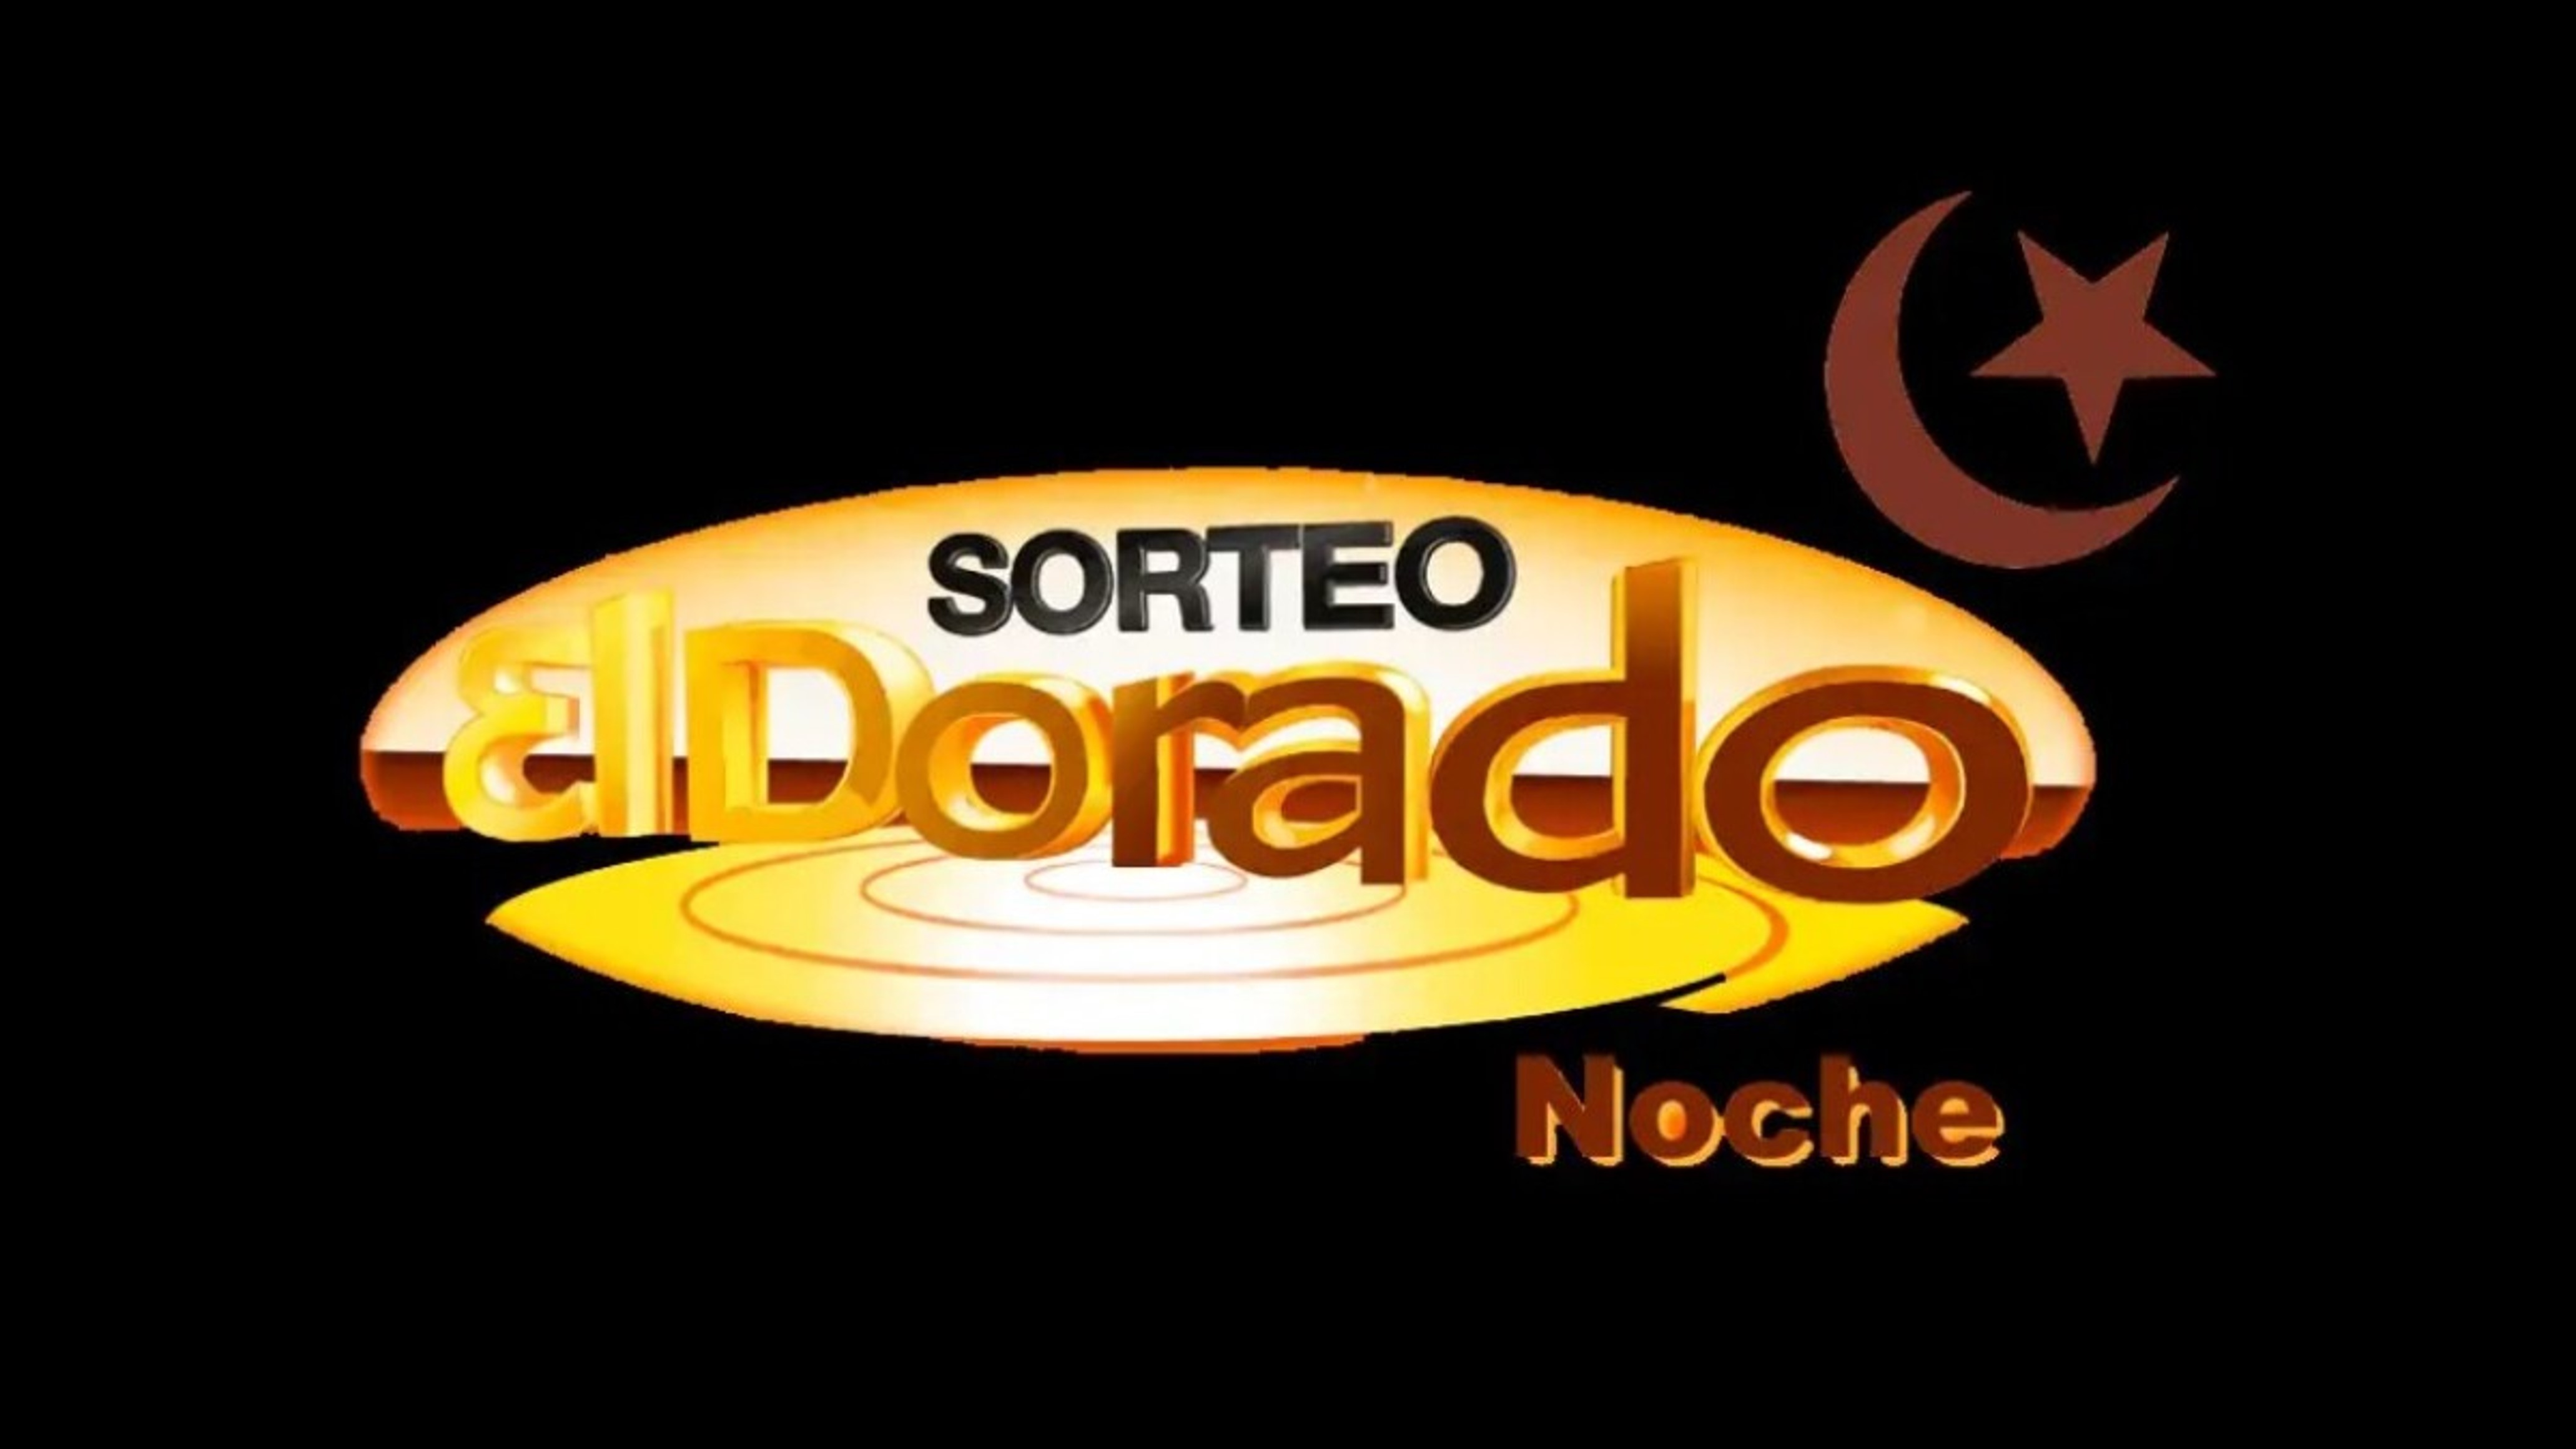 Chances en Colombia:  El Dorado, Chontico y Cafeterito son algunos de los más jugados en Colombia. Coljuegos dice que sí son legales.